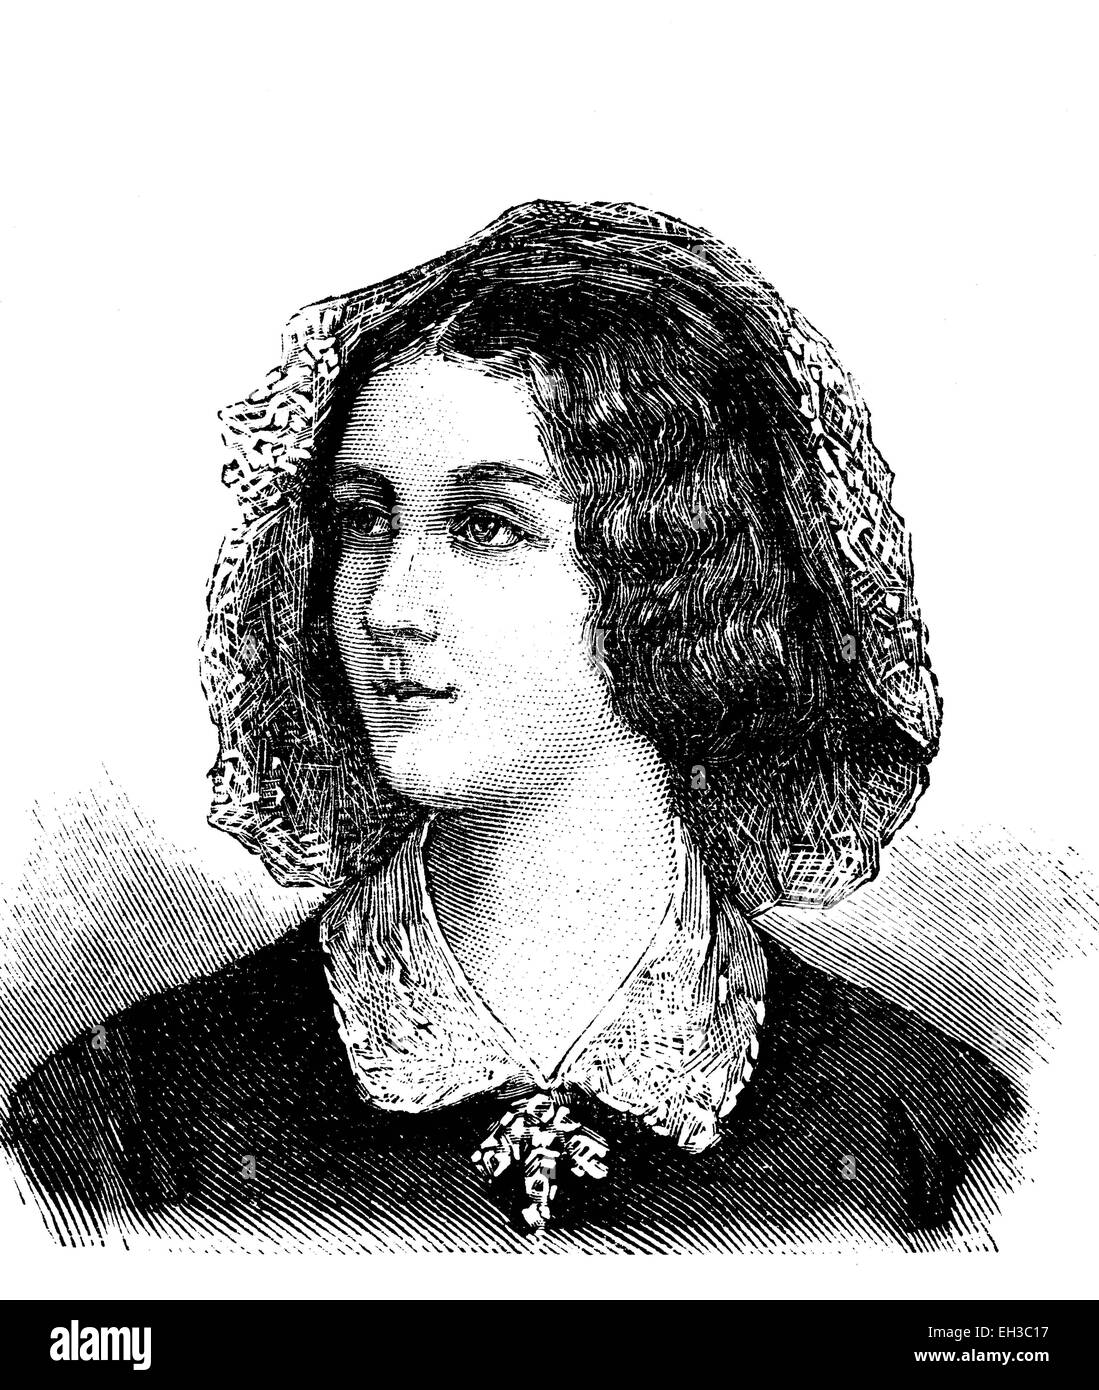 Elizabeth Rosanna Gilbert, également connu sous le nom de Lola Montez, 1821 - 1861, danseur irlandais et maîtresse du roi Louis I de Bavière, qui a fait sa Comtesse de Landsfeld Marie en 1847, gravure sur bois, vers 1880 Banque D'Images